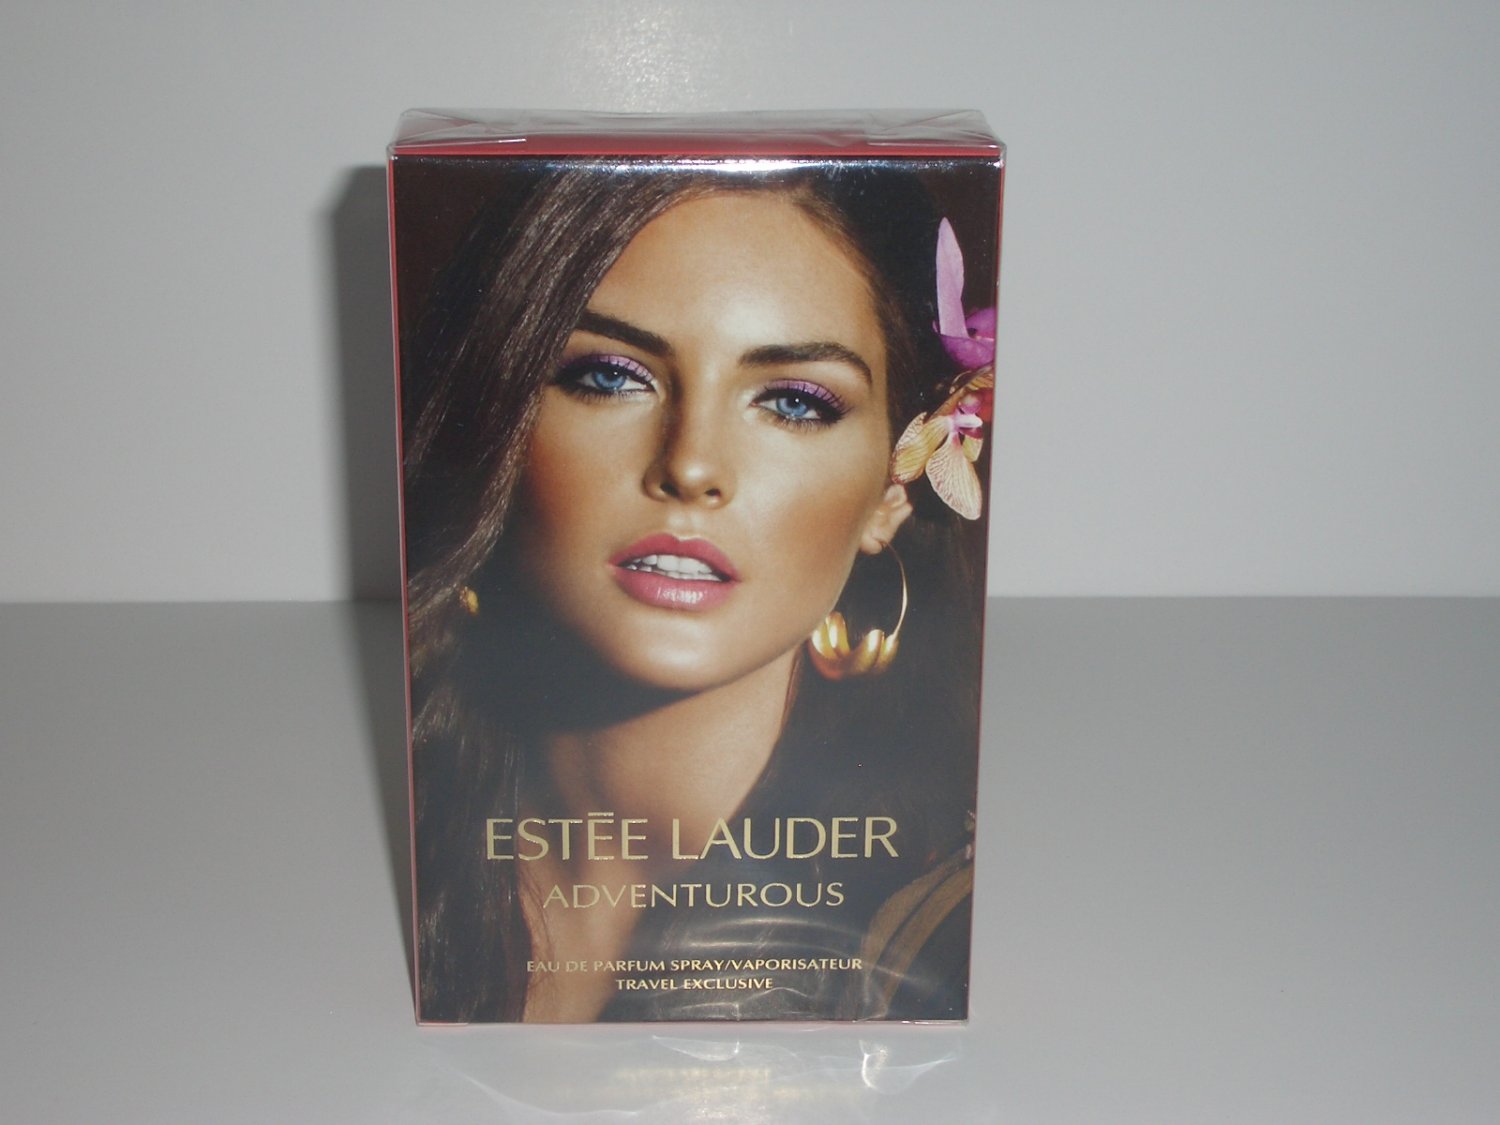 Estee Lauder Travel Exclusive Adventurous Eau De Parfum